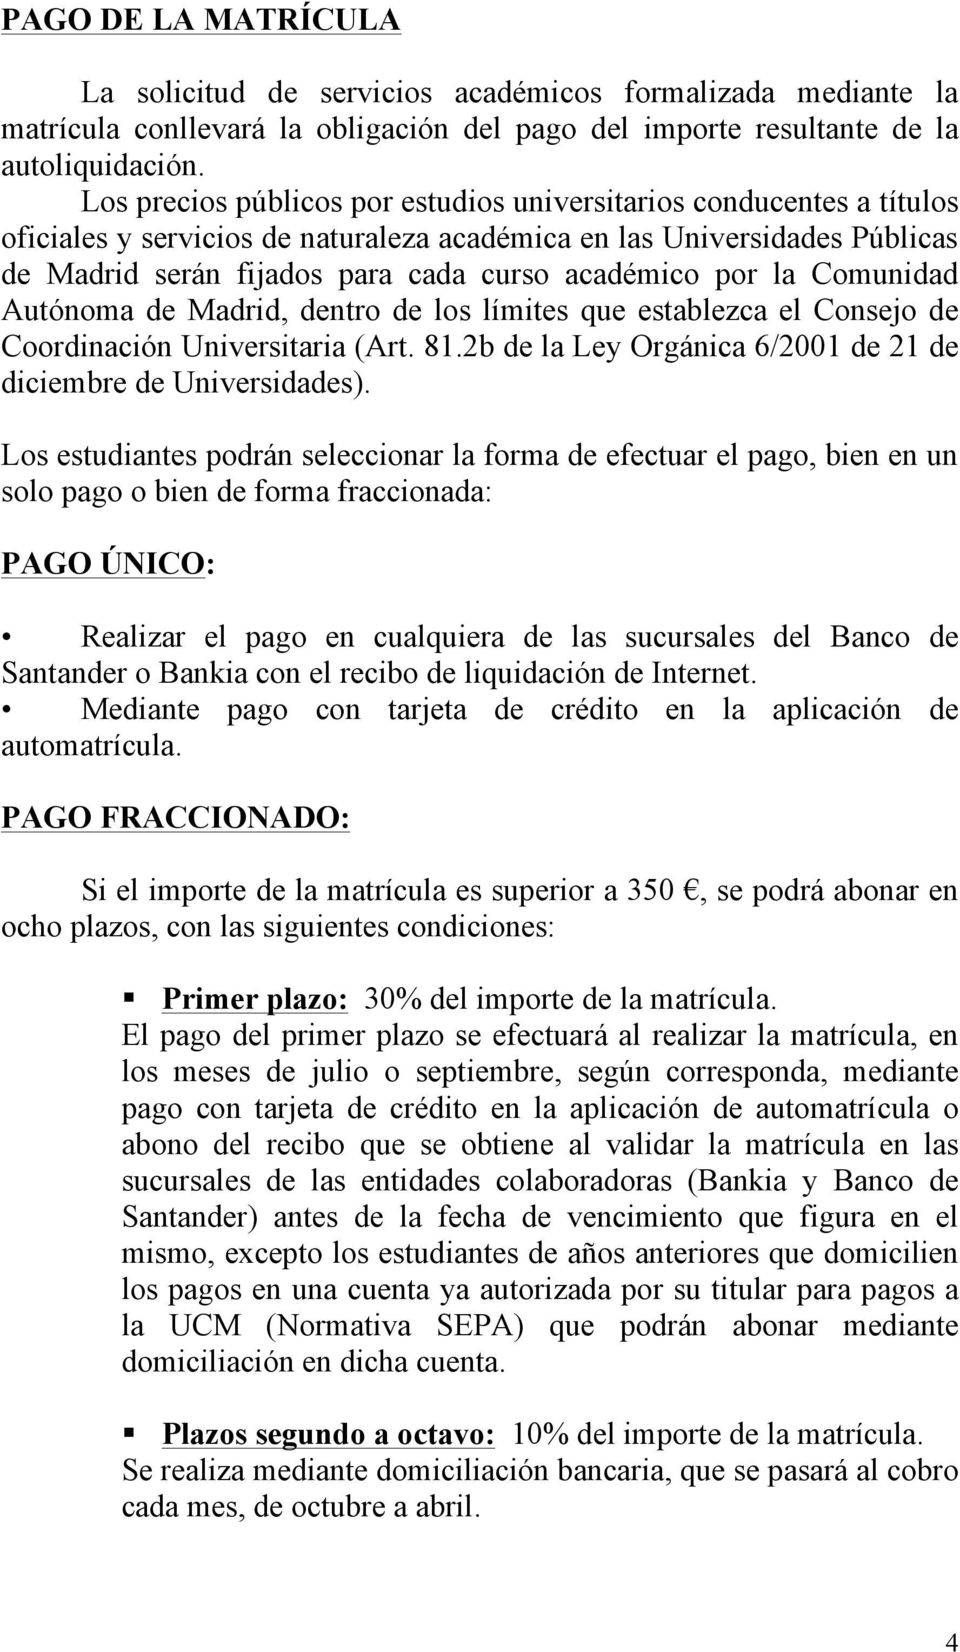 por la Comunidad Autónoma de Madrid, dentro de los límites que establezca el Consejo de Coordinación Universitaria (Art. 81.2b de la Ley Orgánica 6/2001 de 21 de diciembre de Universidades).